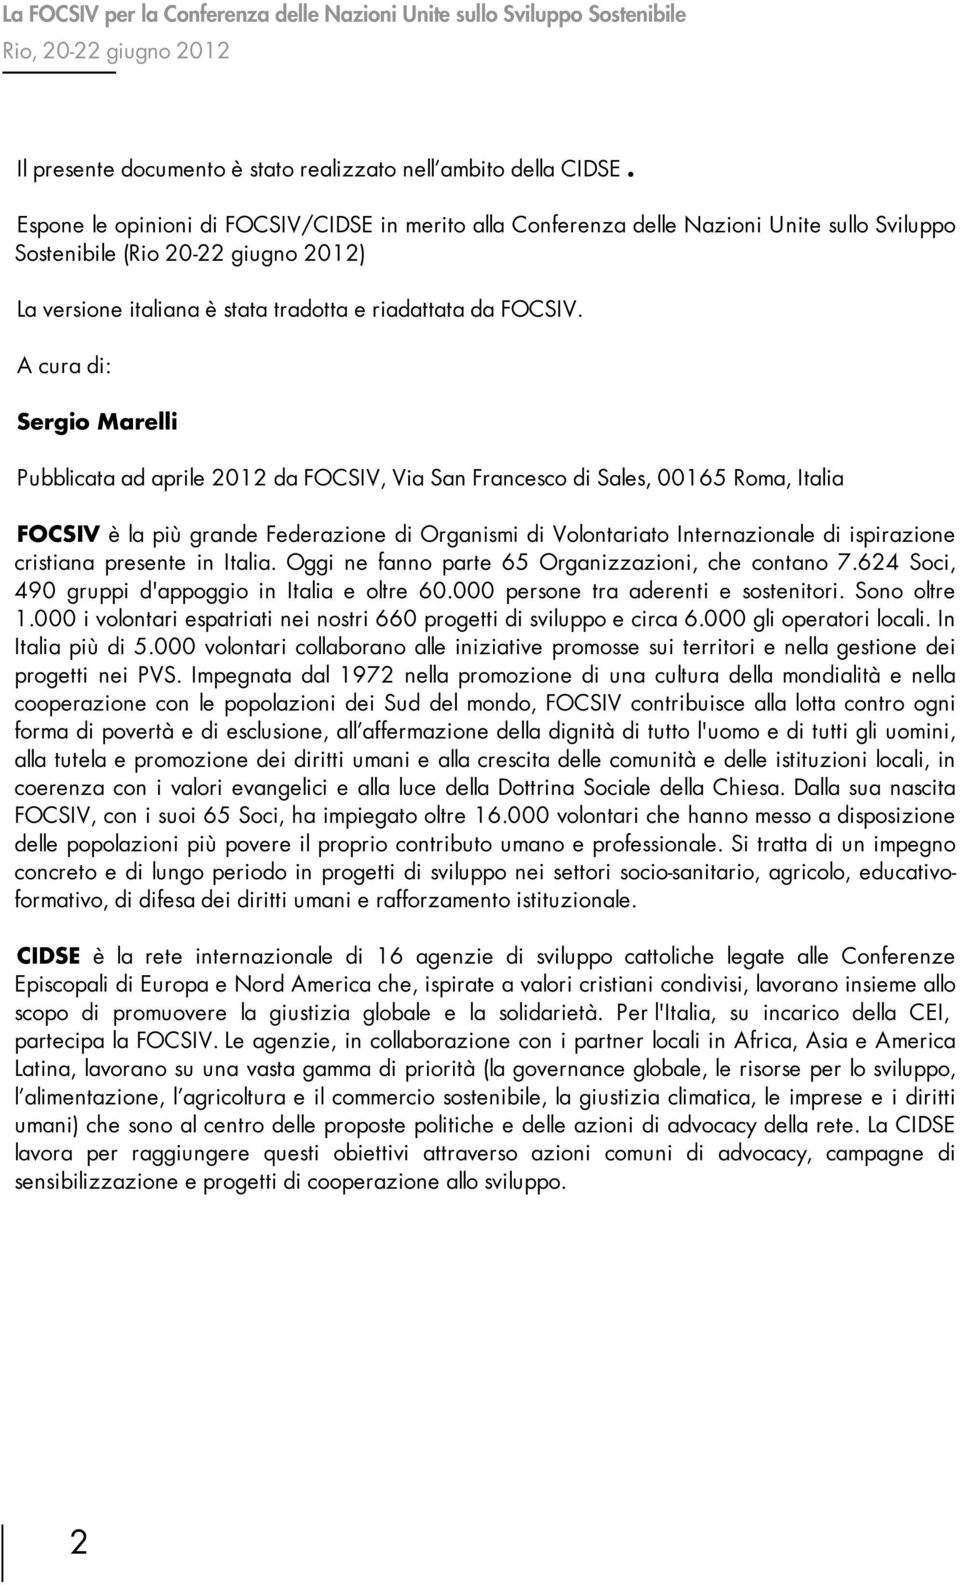 A cura di: Sergio Marelli Pubblicata ad aprile 2012 da FOCSIV, Via San Francesco di Sales, 00165 Roma, Italia FOCSIV è la più grande Federazione di Organismi di Volontariato Internazionale di